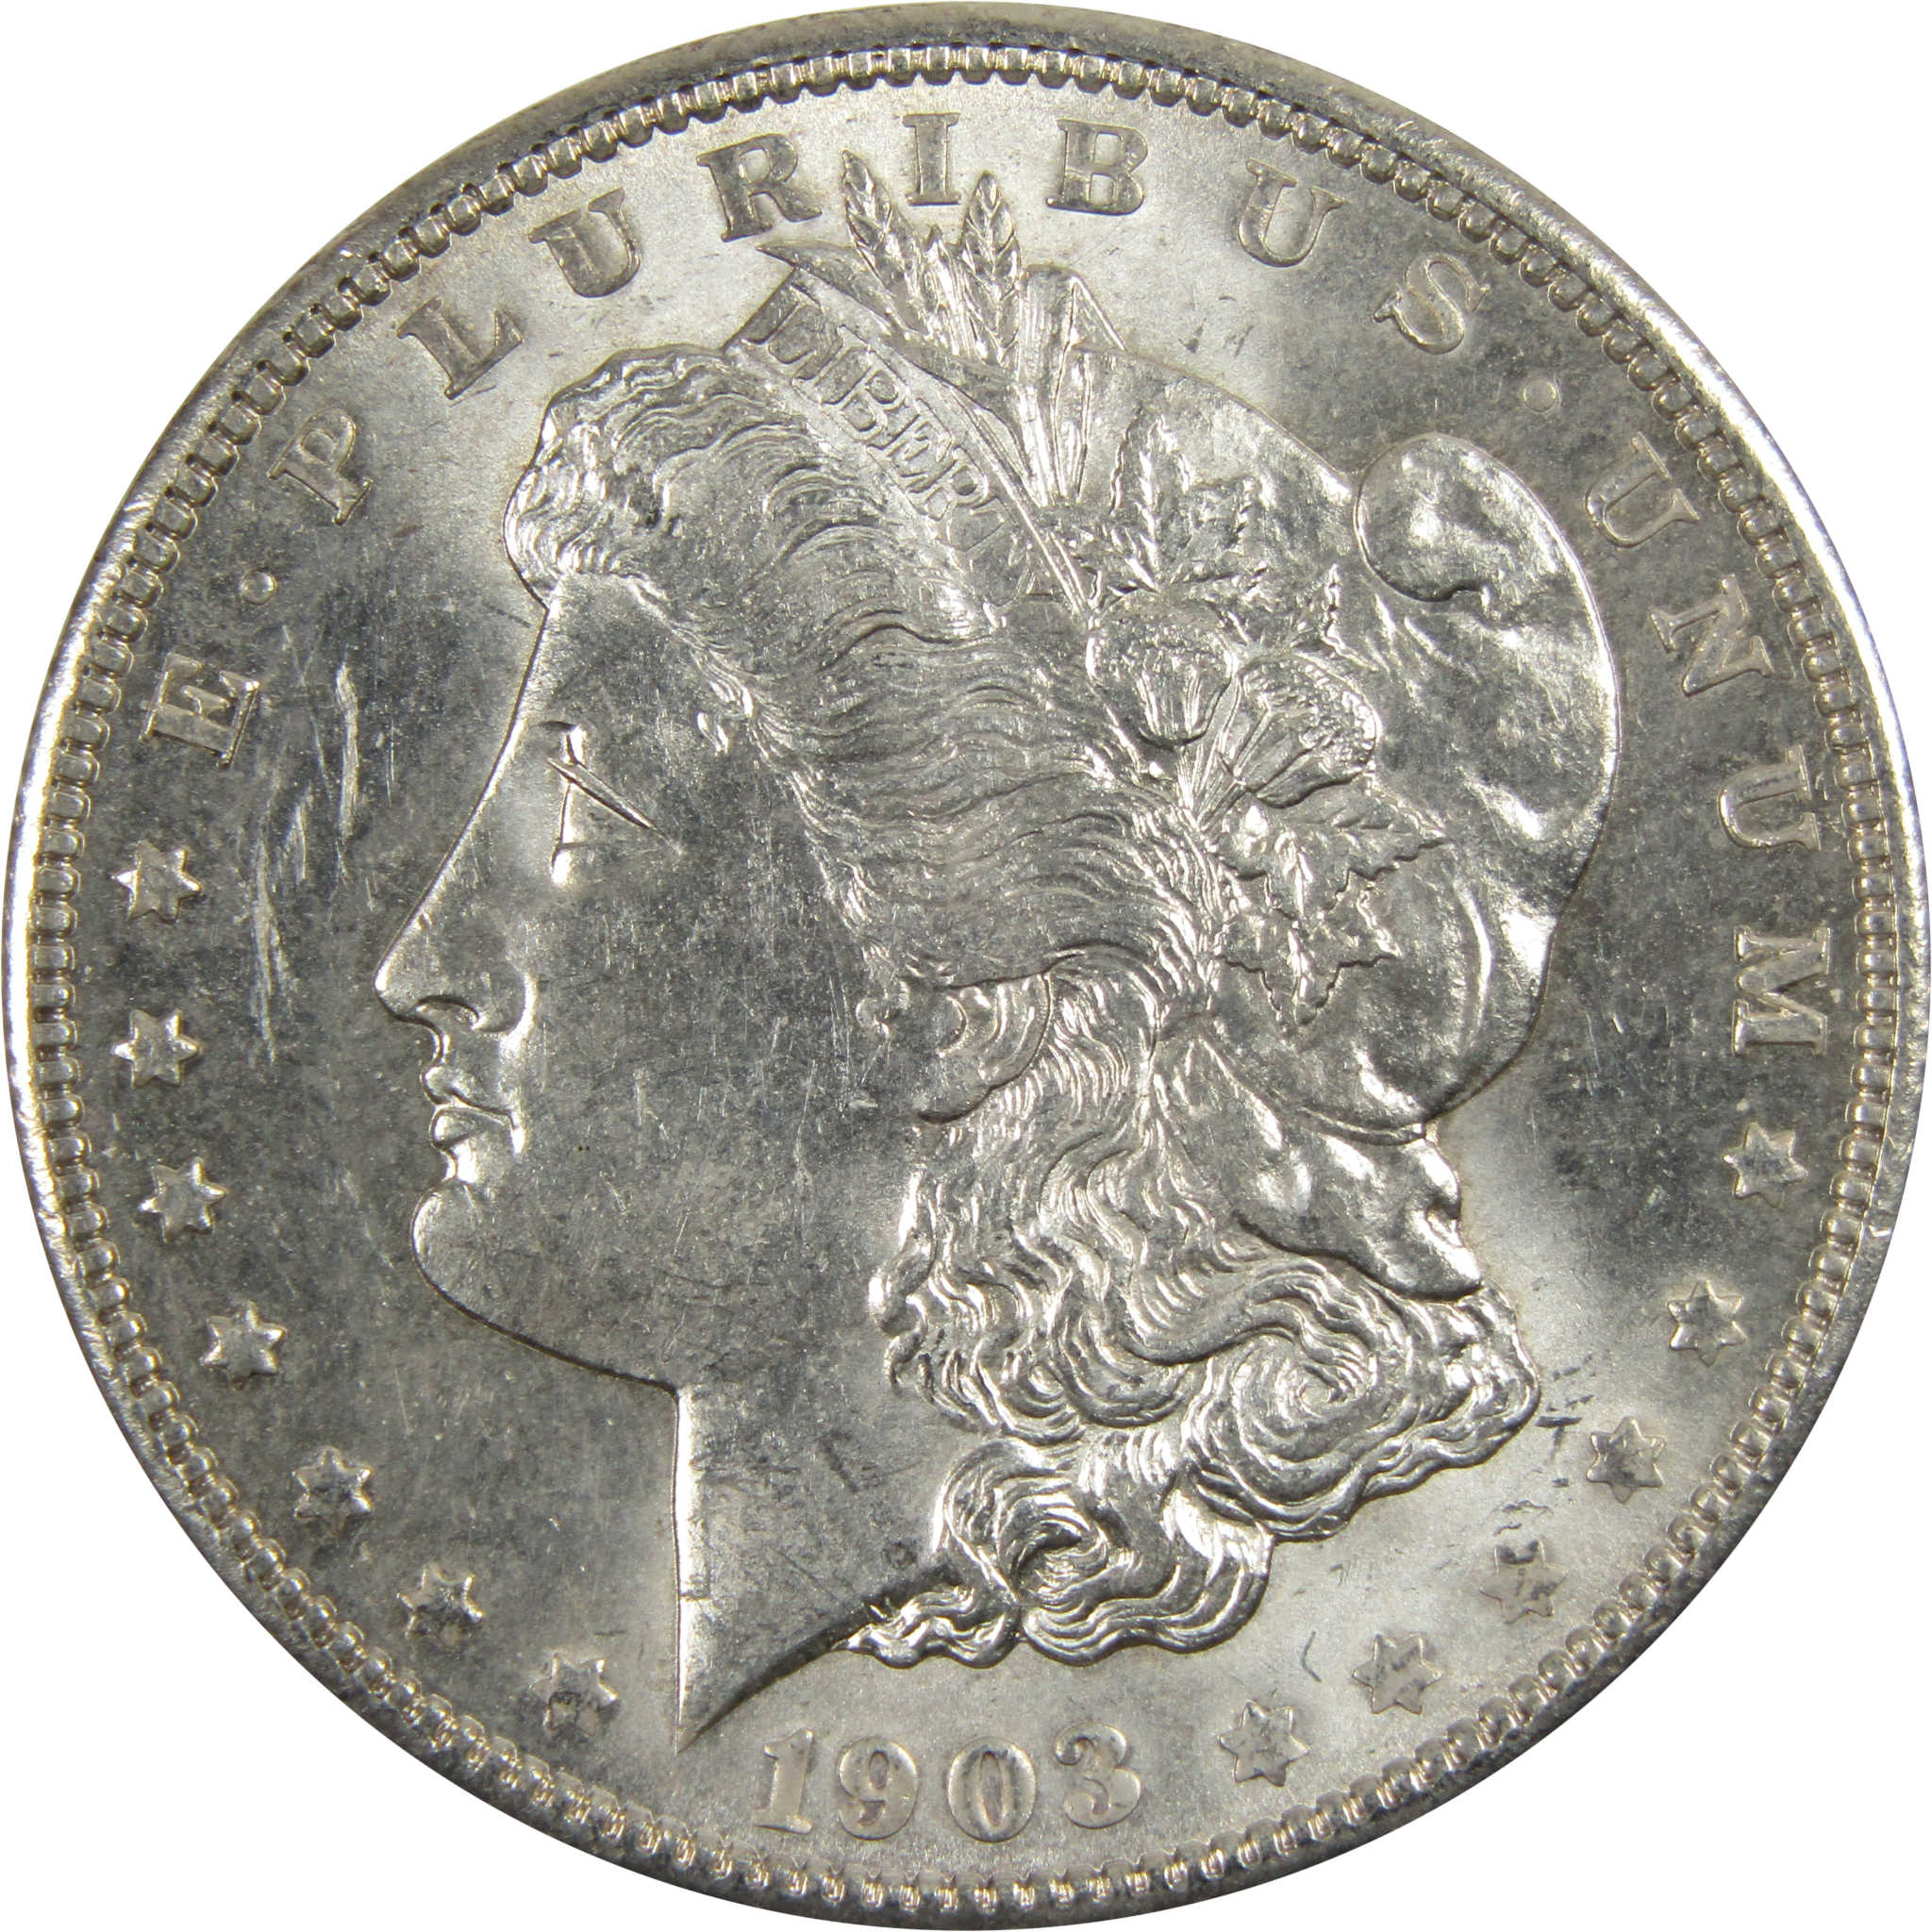 1903 O Morgan Dollar BU Choice Uncirculated 90% Silver $1 SKU:I7911 - Morgan coin - Morgan silver dollar - Morgan silver dollar for sale - Profile Coins &amp; Collectibles